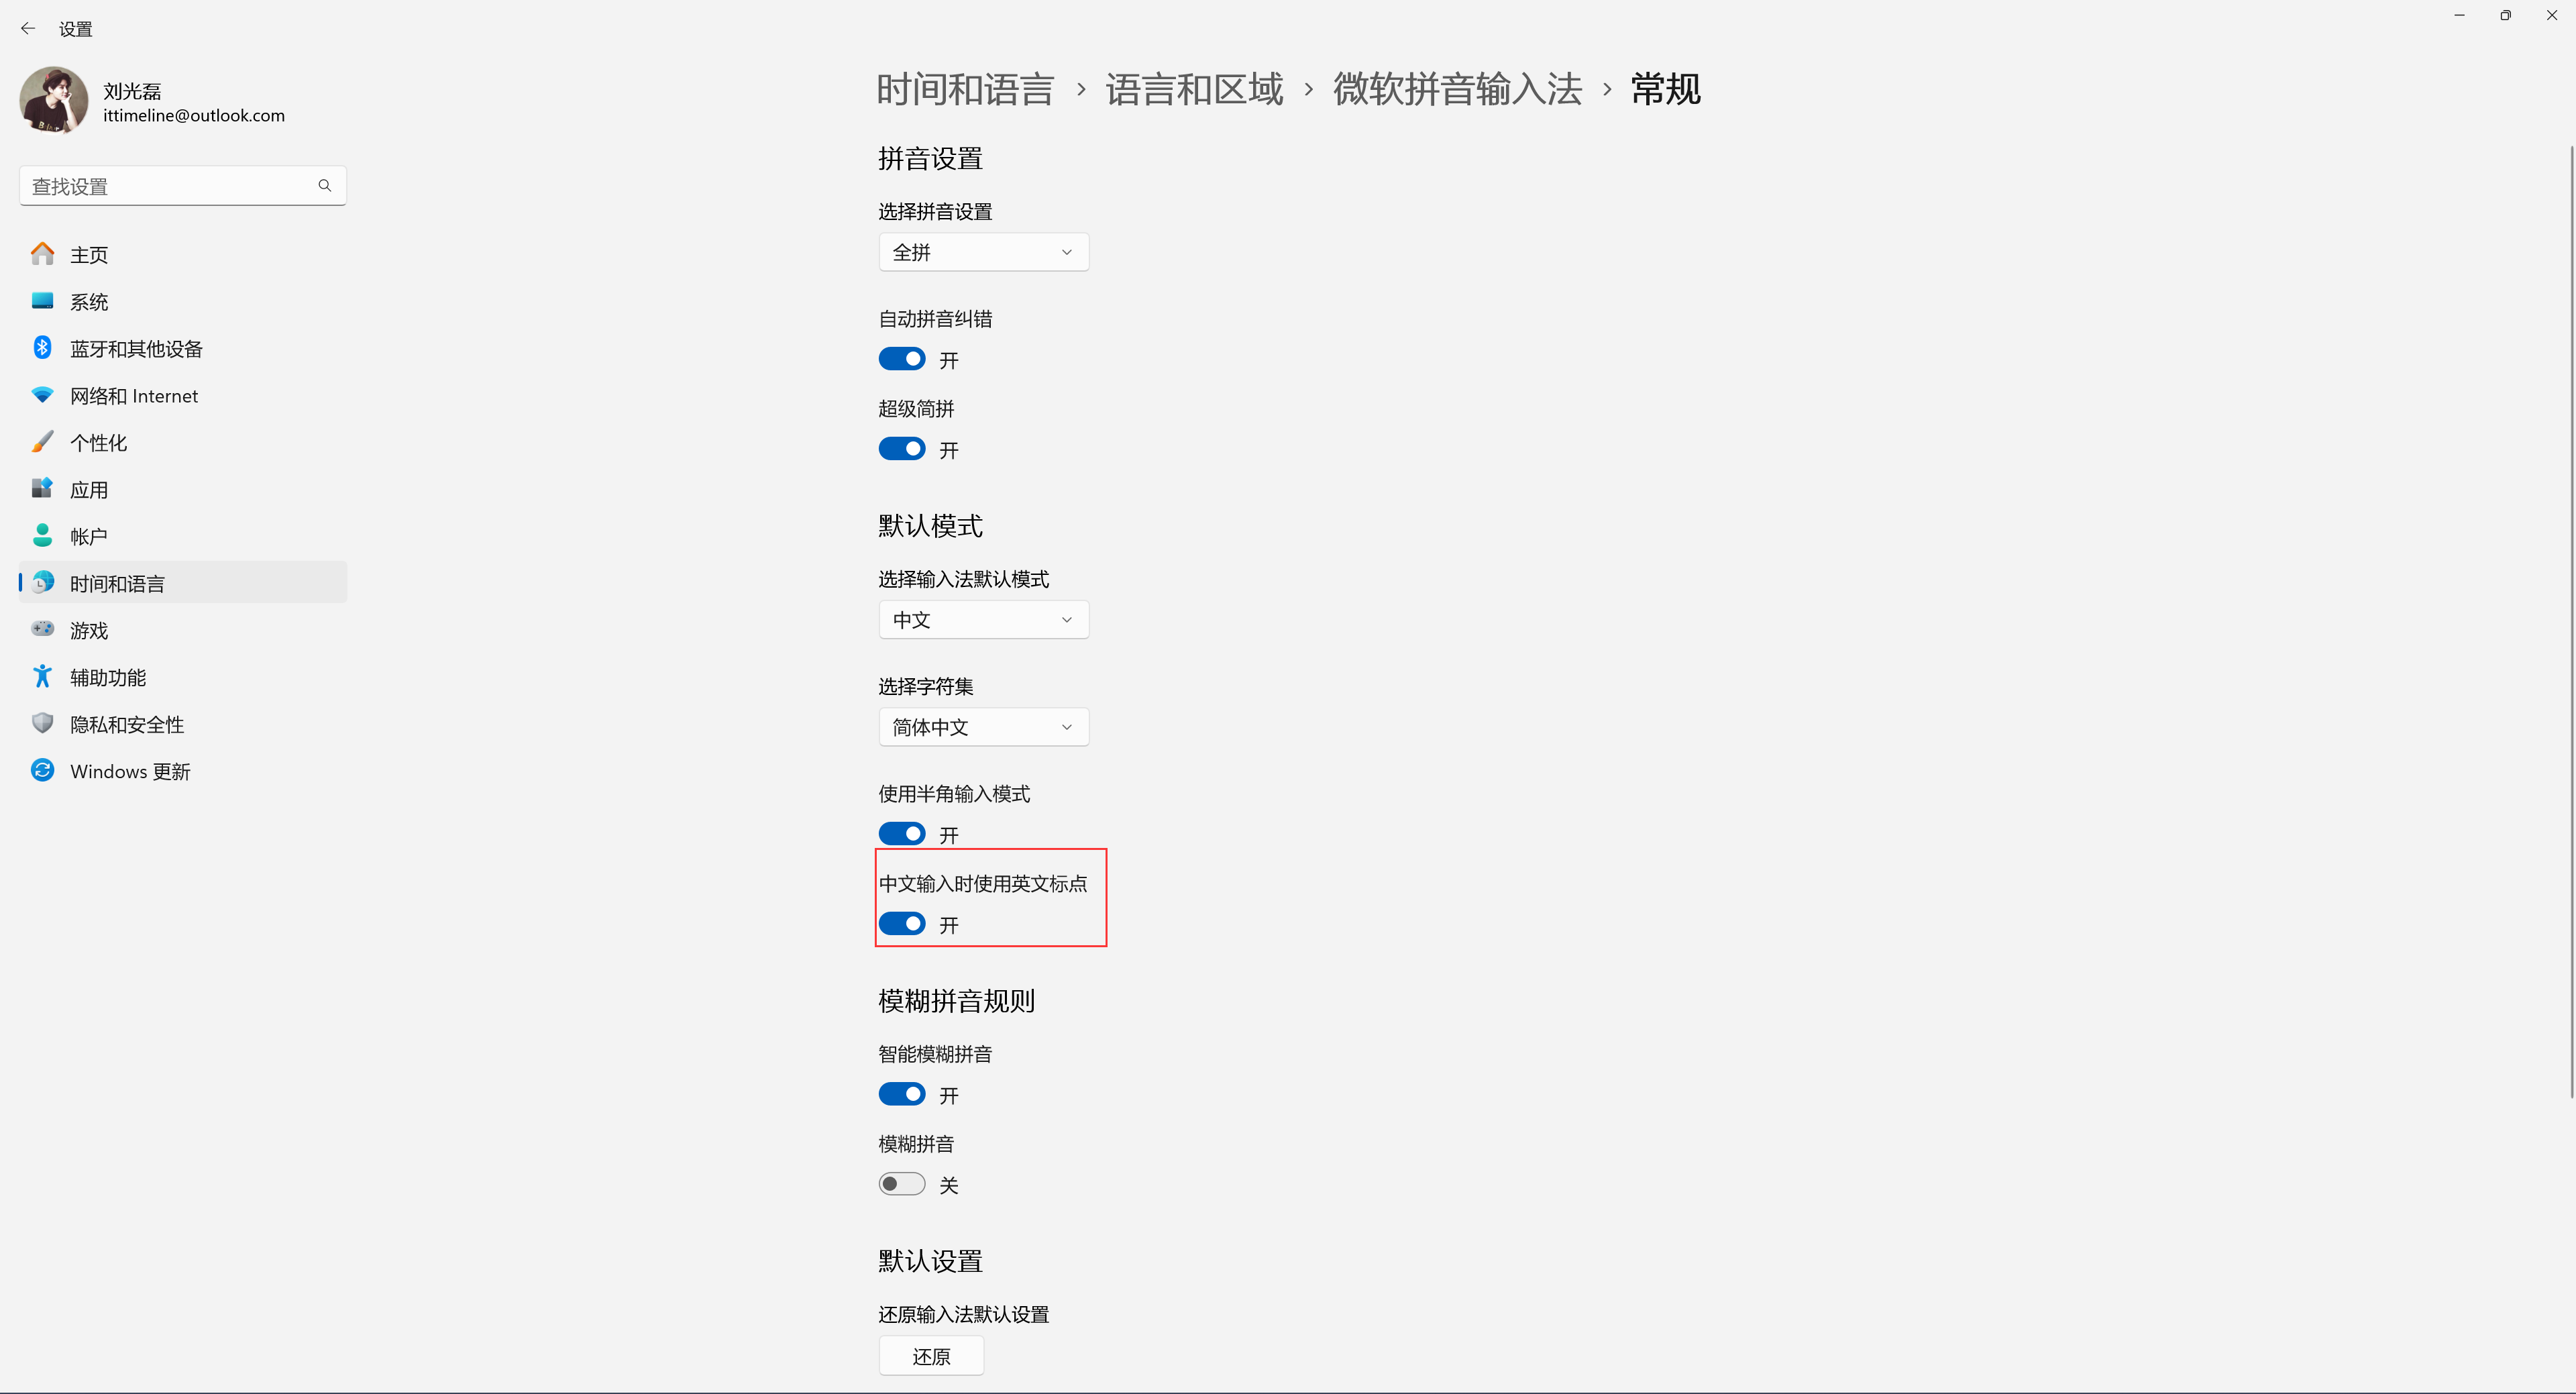 打开中文输入时使用英文标点